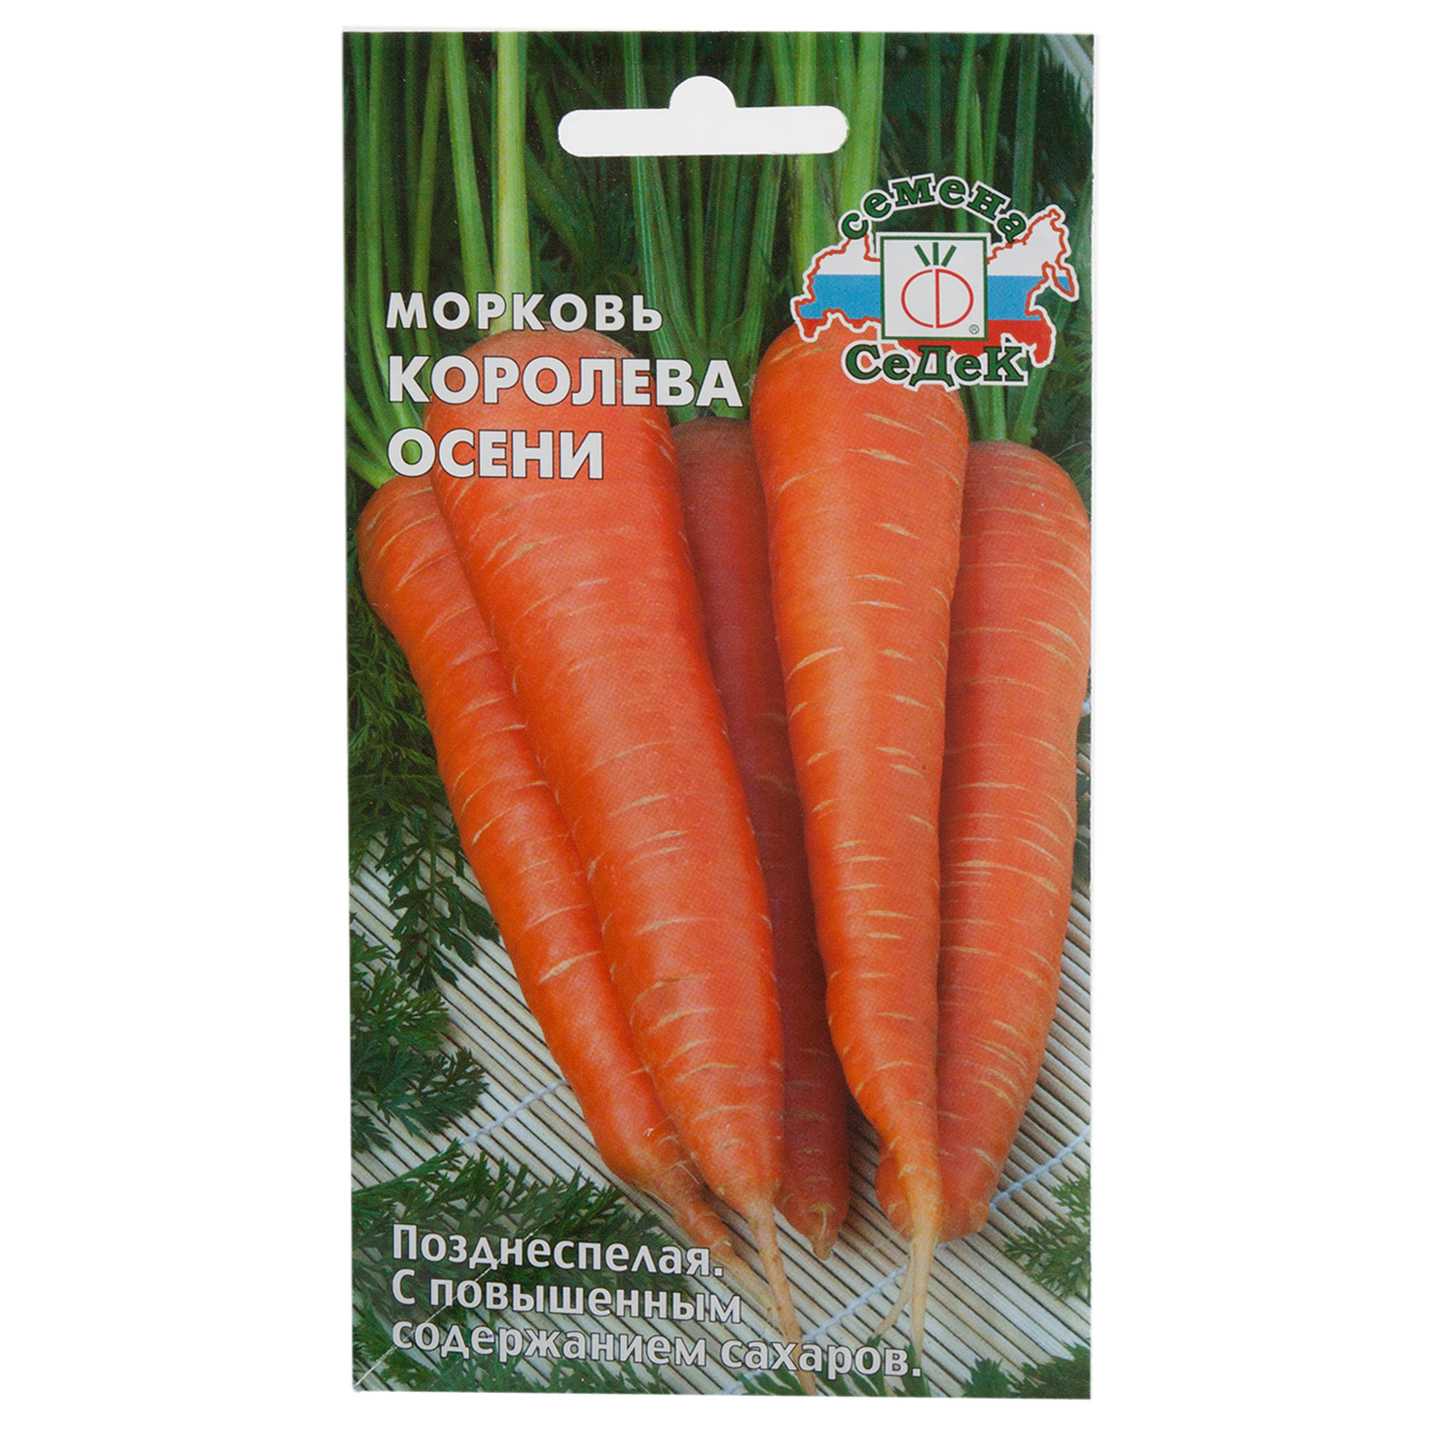 Самые лучшие сорта моркови